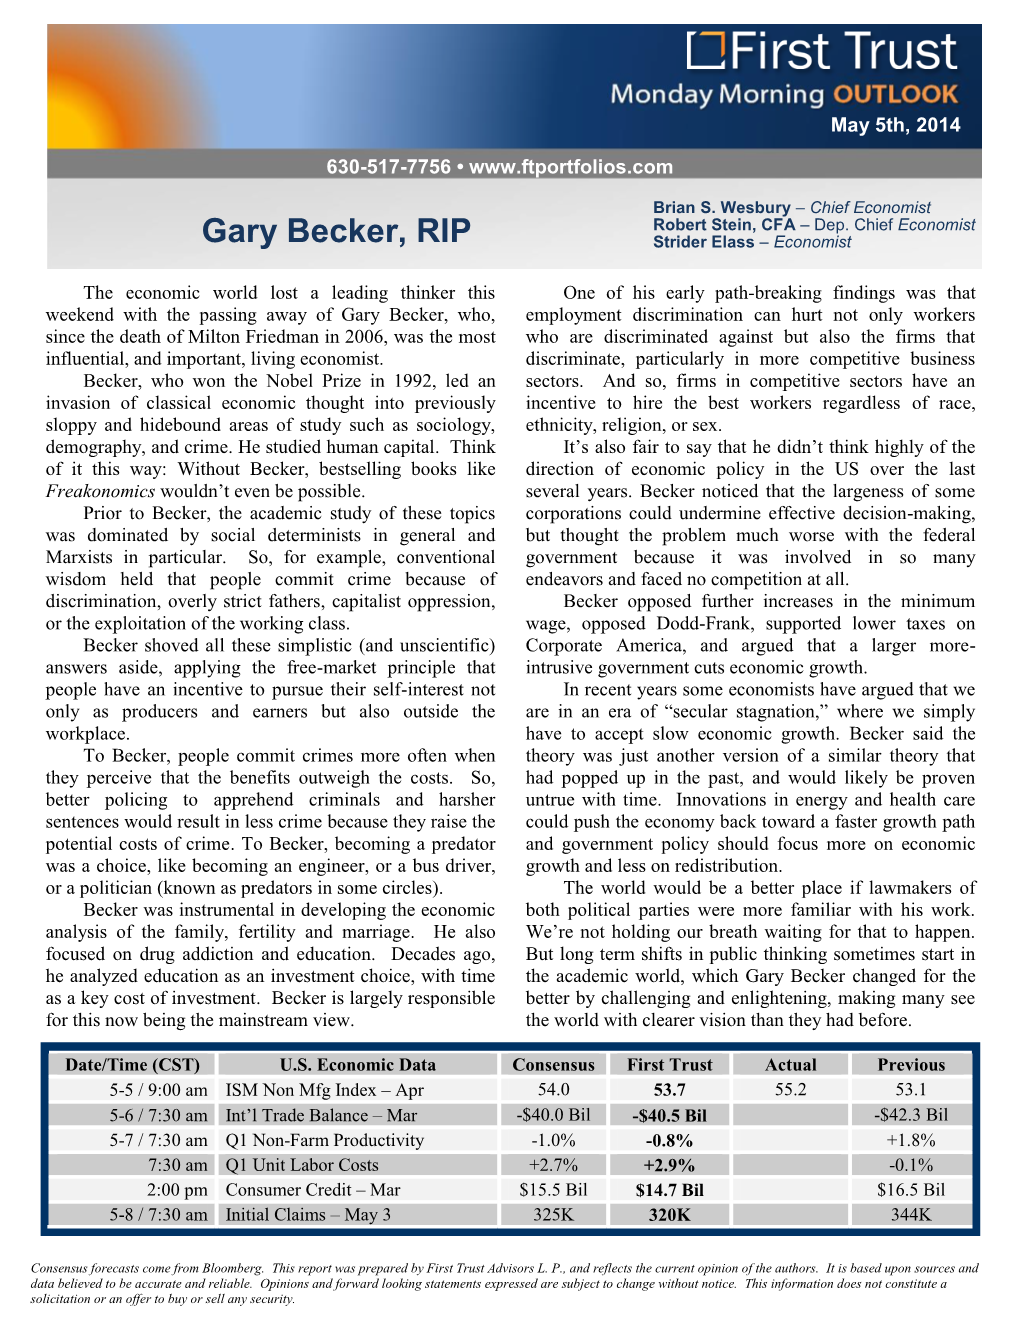 Gary Becker, RIP Strider Elass – Economist